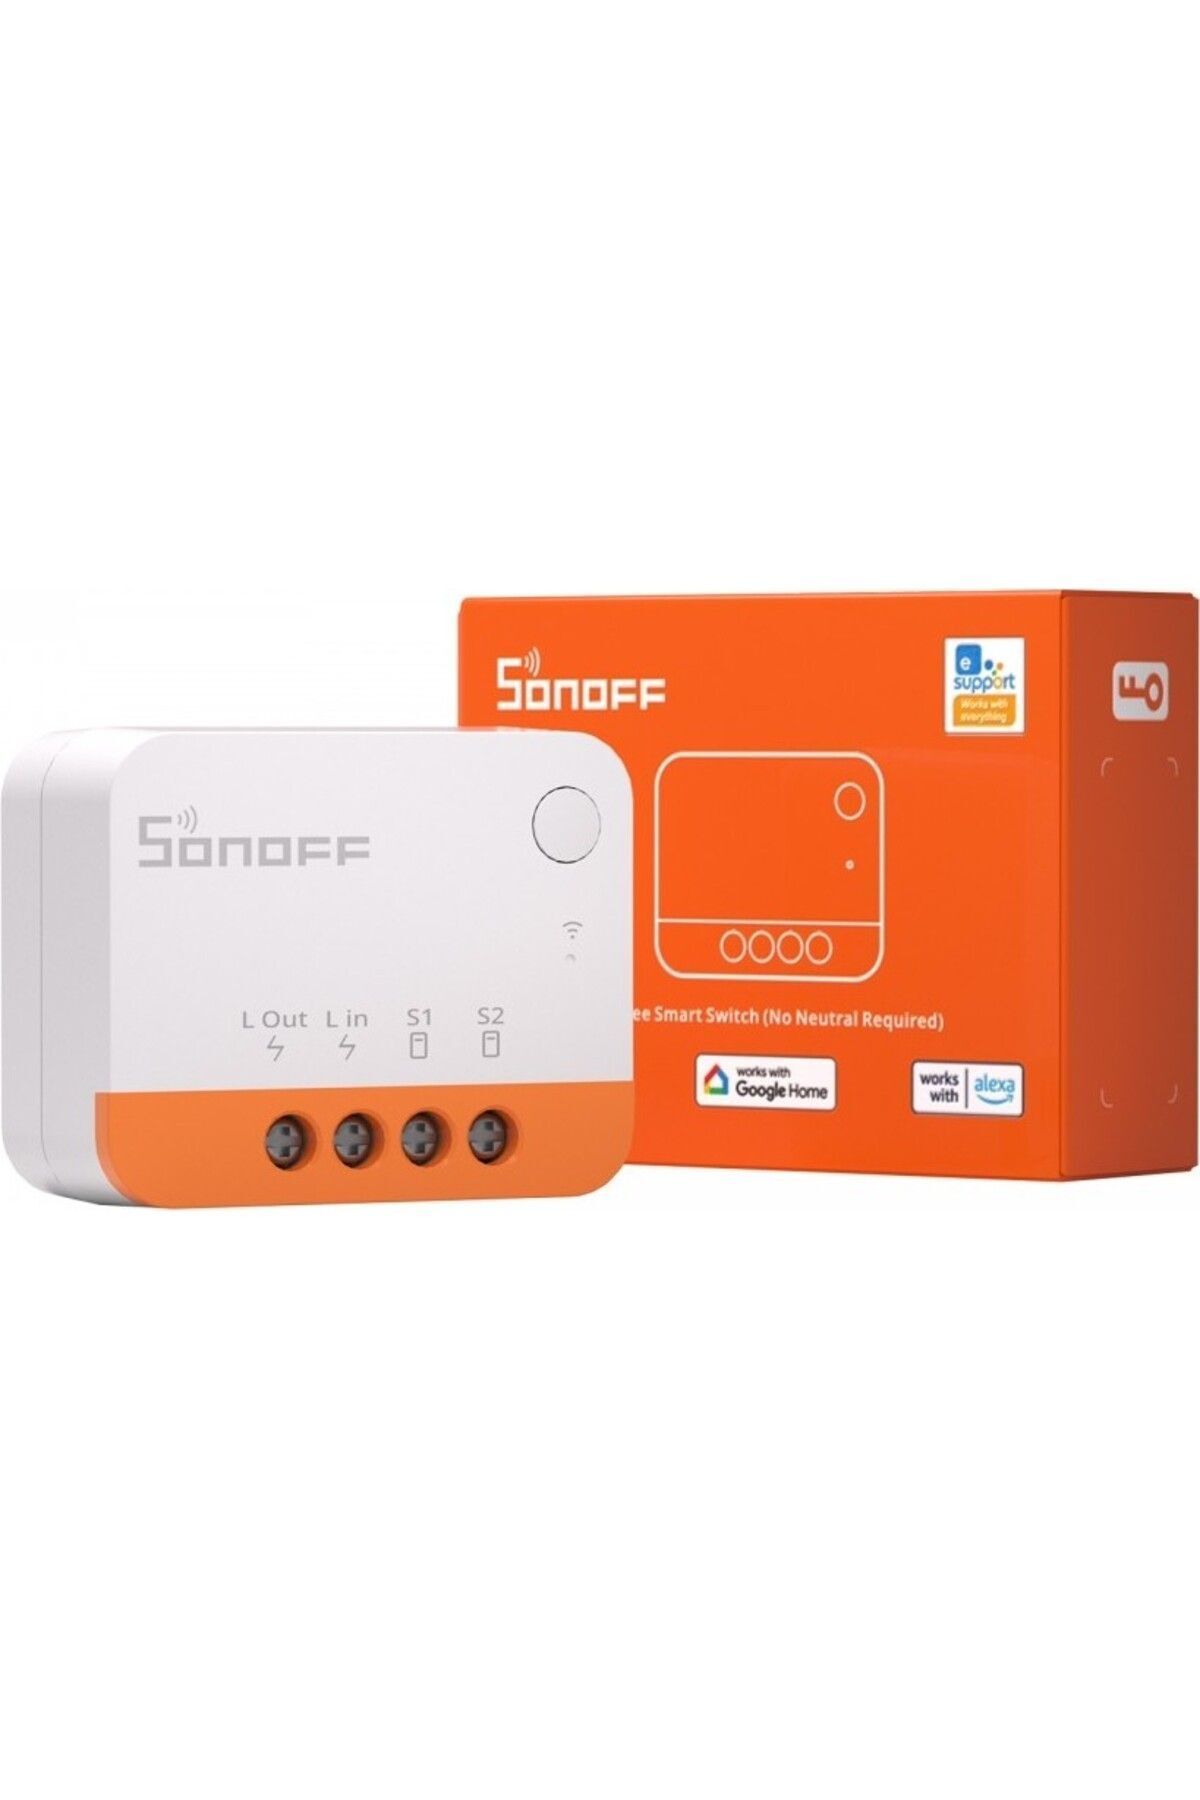 Sonoff Zigbee Mini Extreme - Nötrsüz Röle - Zigbee Bridge, Smart Things, Amazon Echo Uyumlu